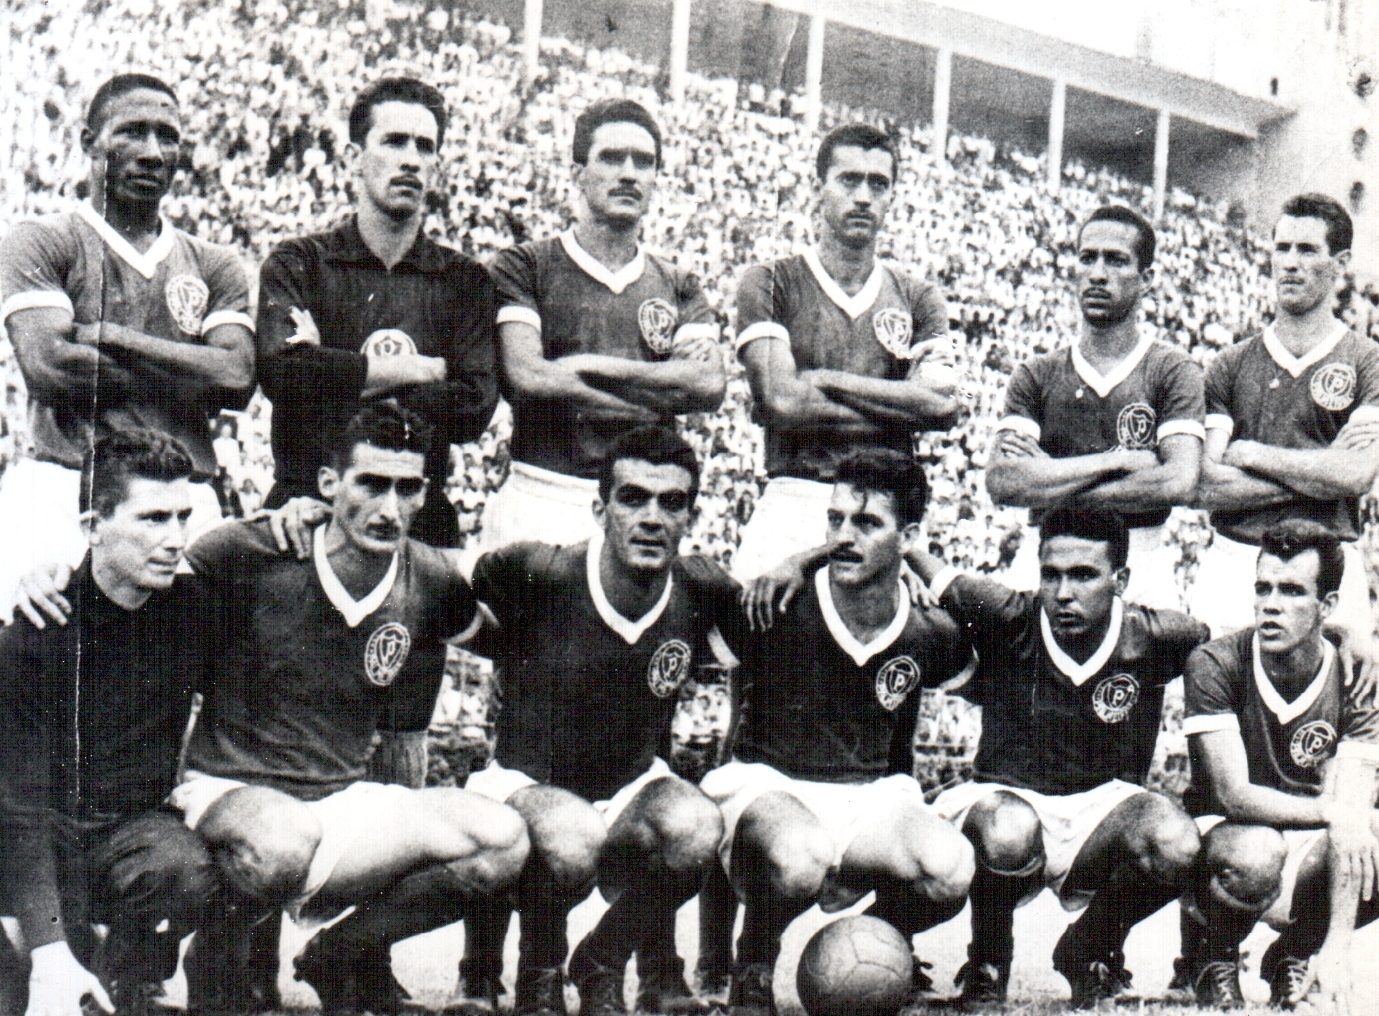 Campeonato Paulista 1959 - Palmeiras e Santos se enfrentaram na decisão do Paulistão de 1959. As primeiras partidas terminaram em empate: 1 a 1 e 2 a 2. No terceiro e derradeiro jogo, Pelé abriu o placar aos 14 do primeiro tempo. Contudo, a Academia palmeirense veio com tudo, virou a partida e garantiu o título.